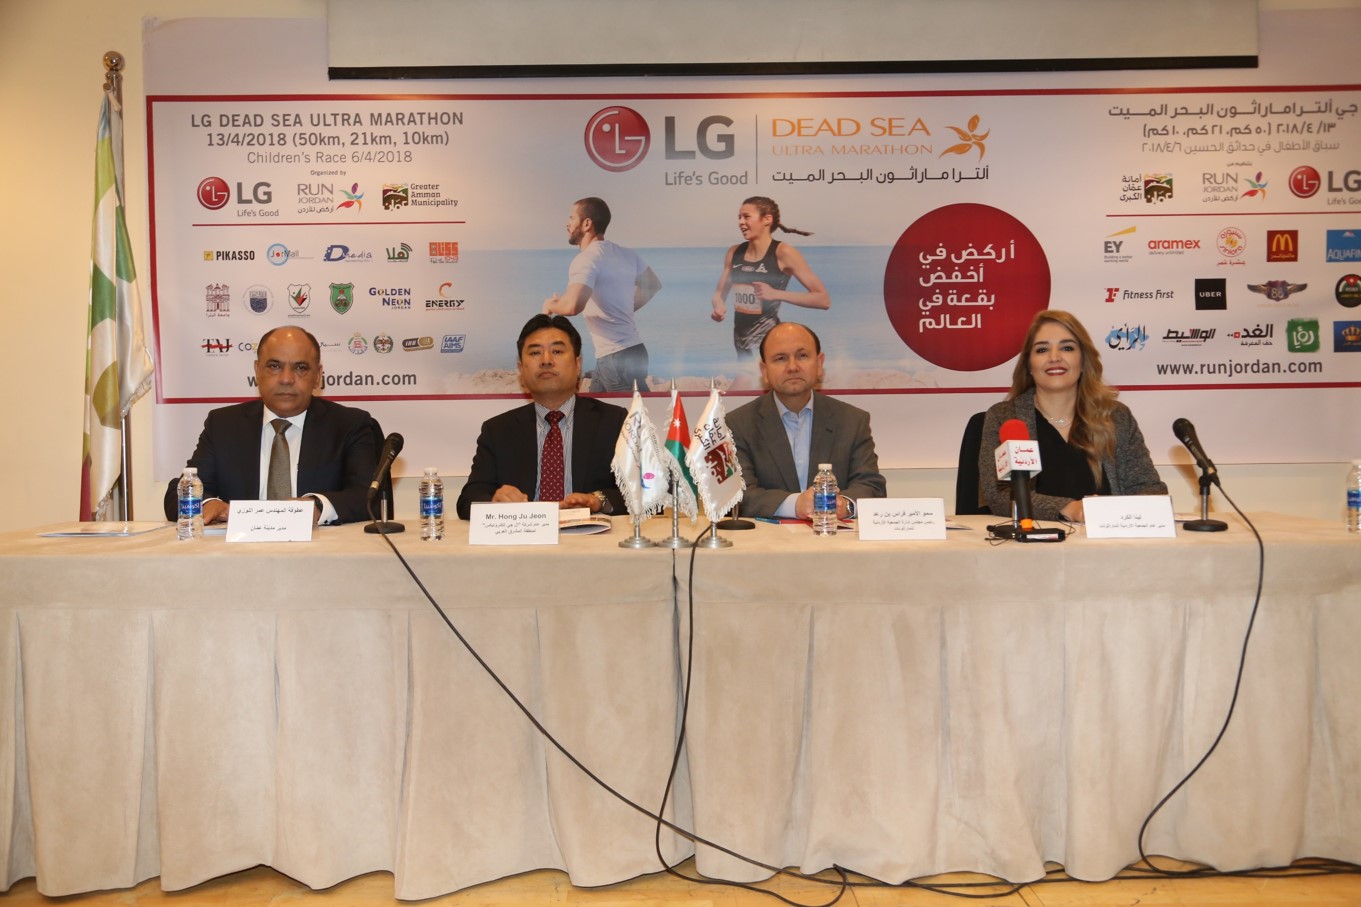 الجمعية الأردنية للماراثونات تعلن إطلاق فعاليات النسخة 24 من إل جي ألتراماراثون البحر الميت